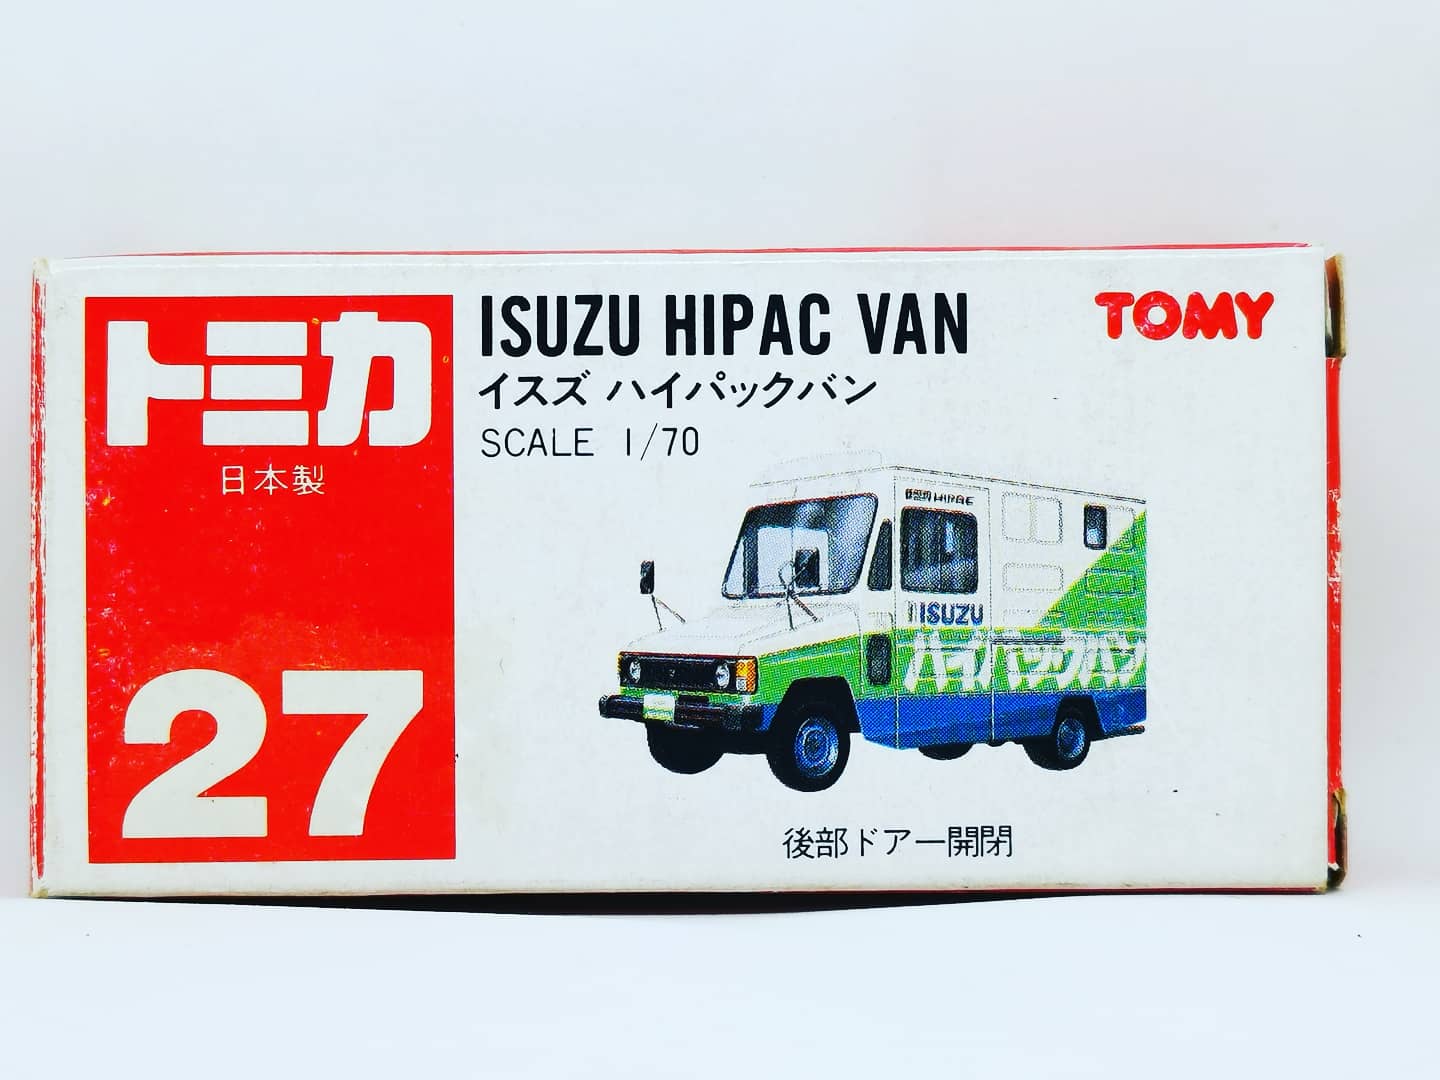 Tomica #27 Isuzu
Hipac Van footwork
Made in Japan